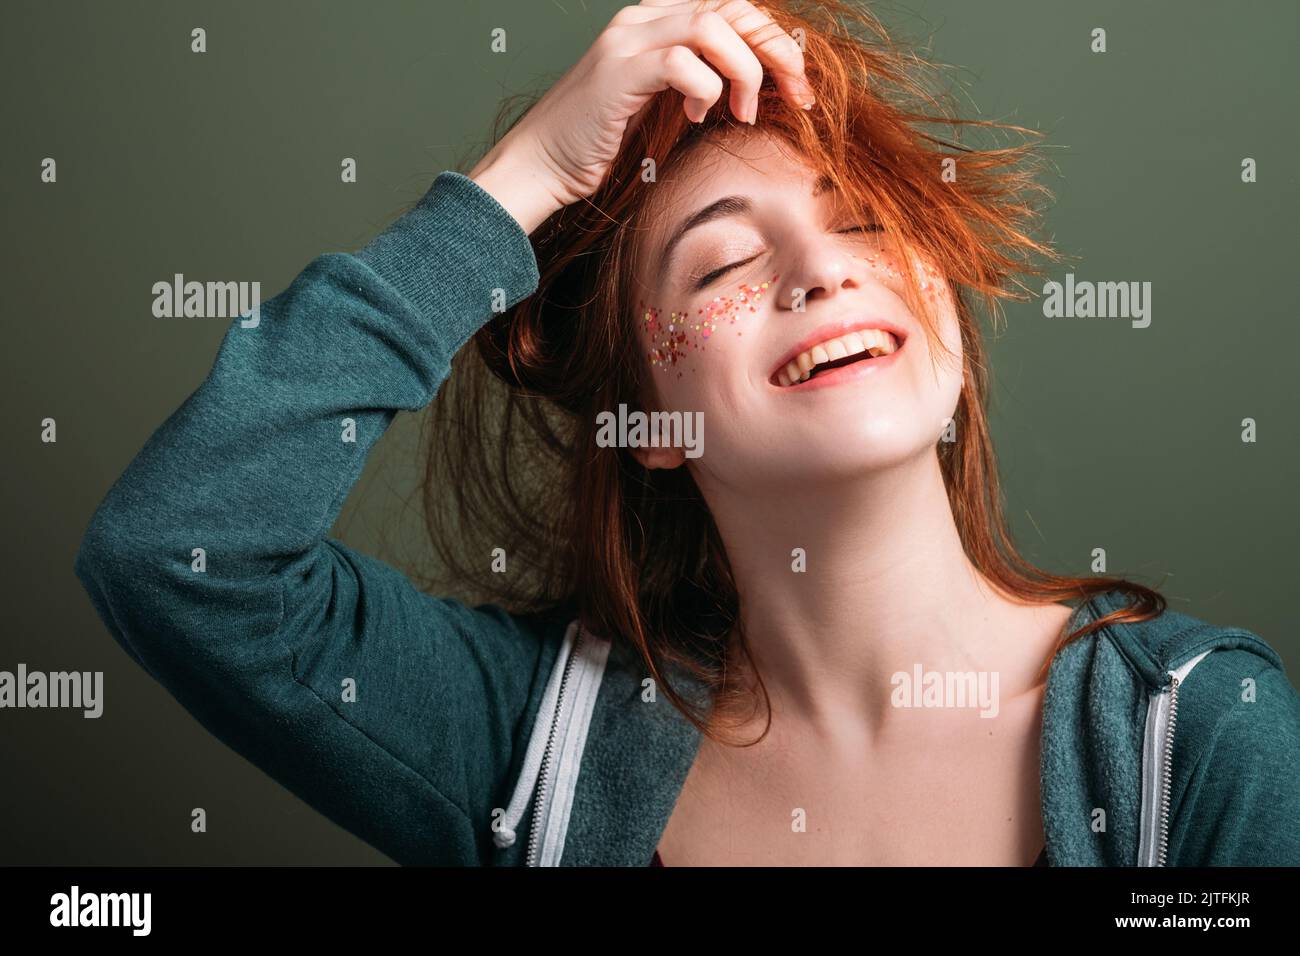 mujer joven linda diversión felicidad peinado Foto de stock